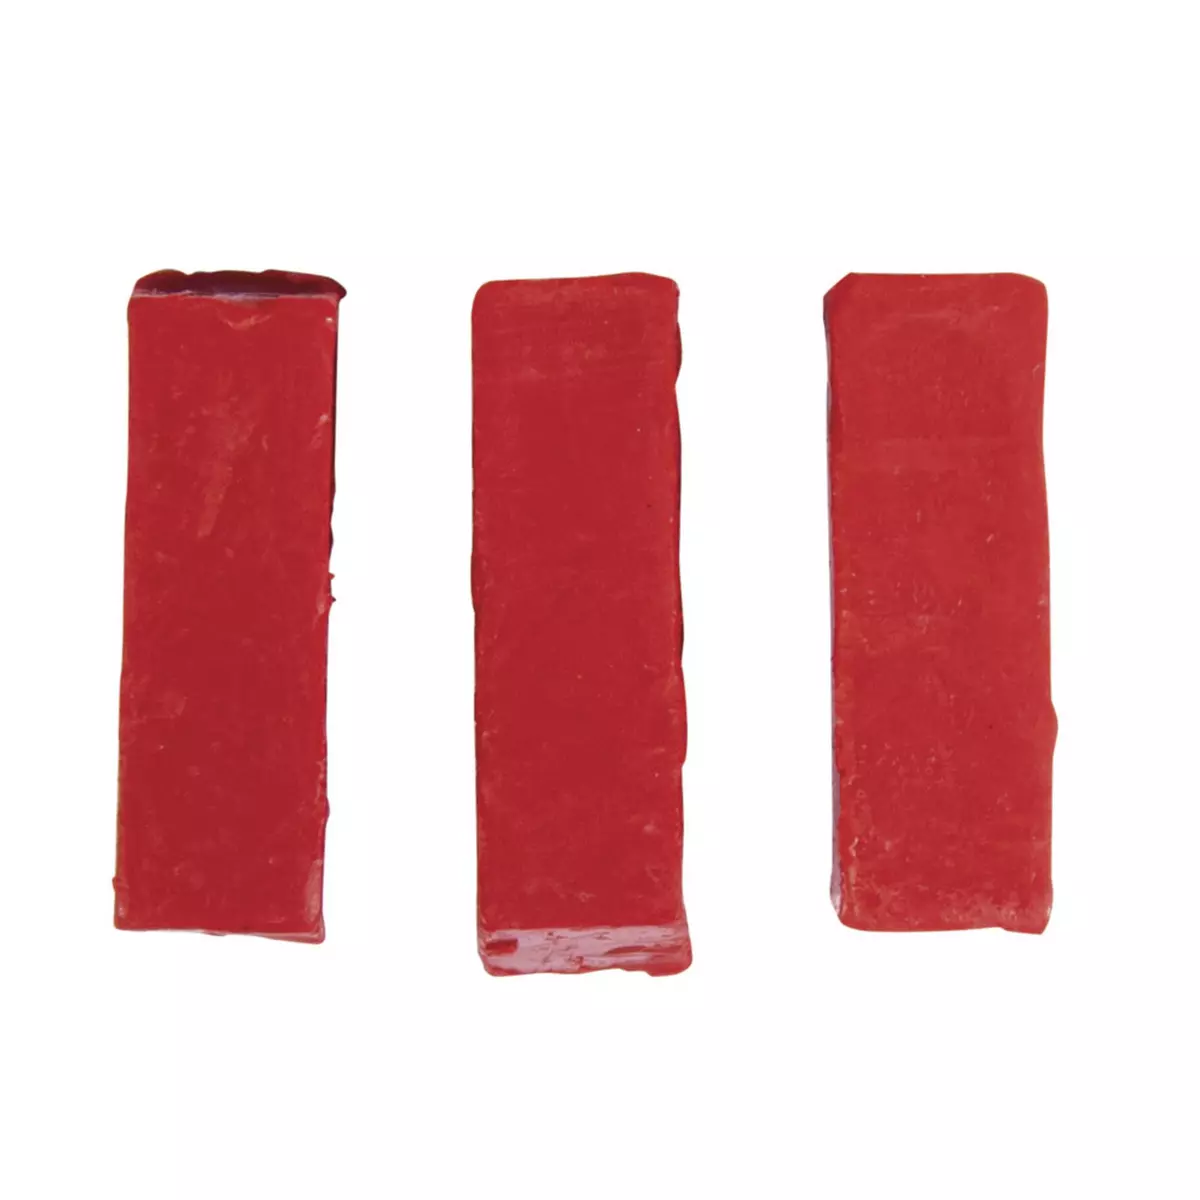 Rayher Pigments de couleur pour cire, rouge, 1x1x2,9cm, 3 pces